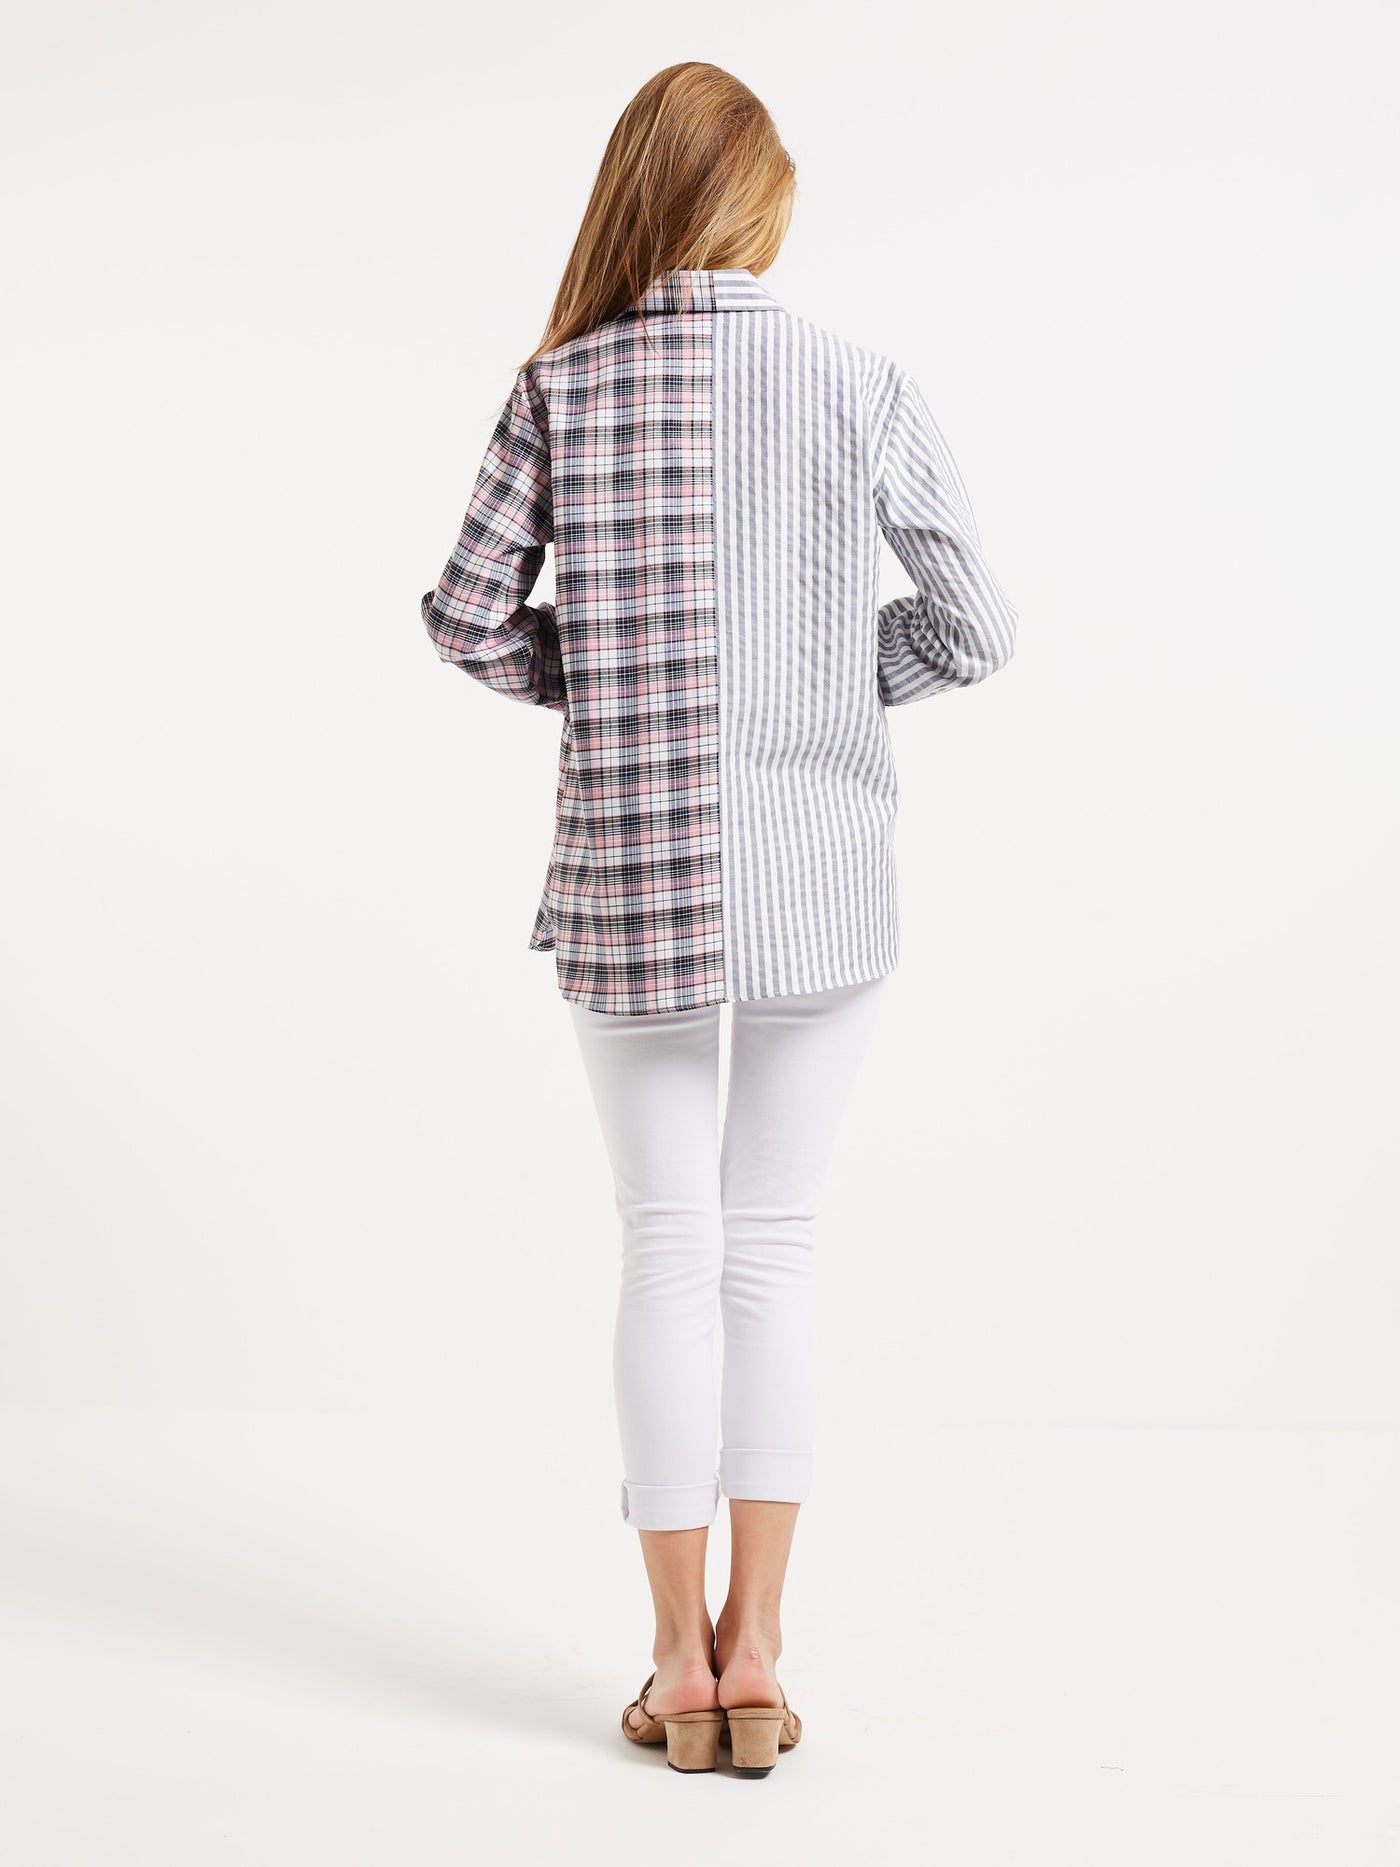 OPIO Women's Two-Tone Asymmetric Pattern Shirt